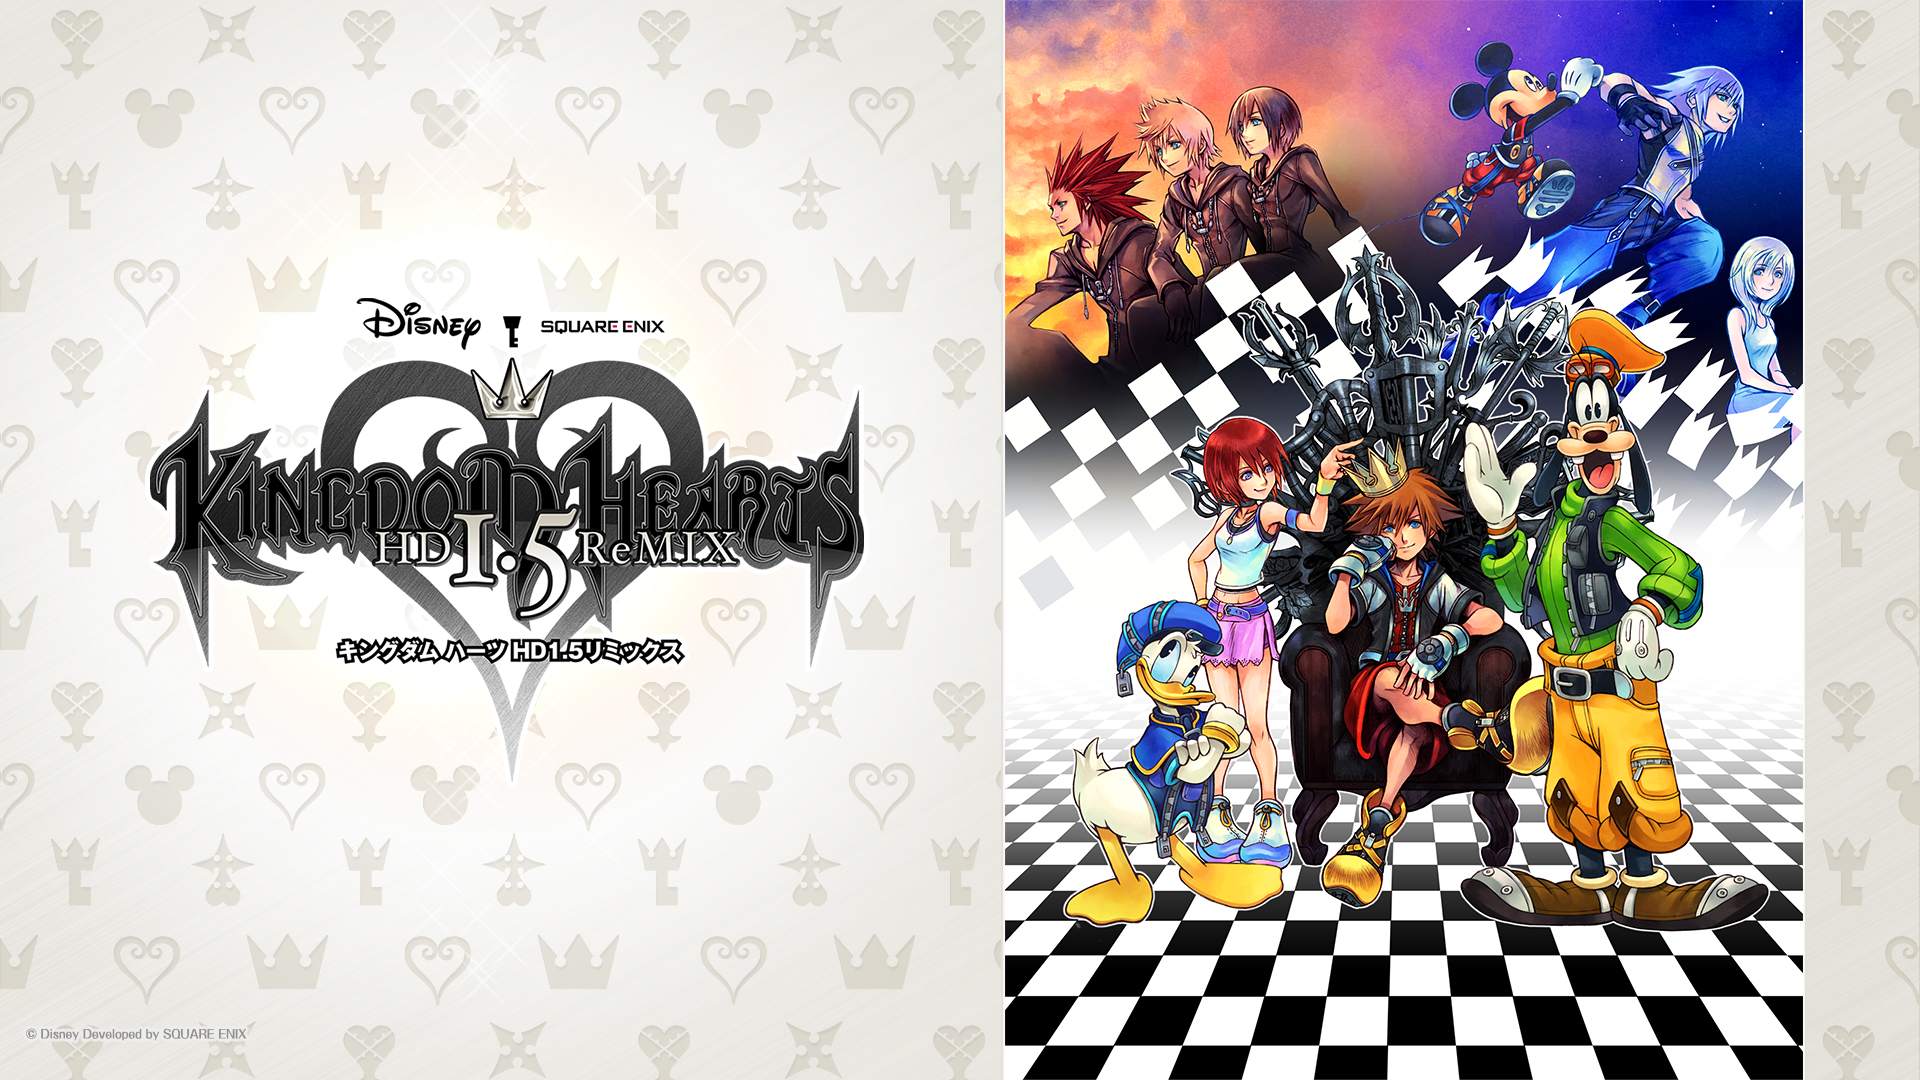 Movies Kingdom Hearts Hd 1 5 Remix Square Enix